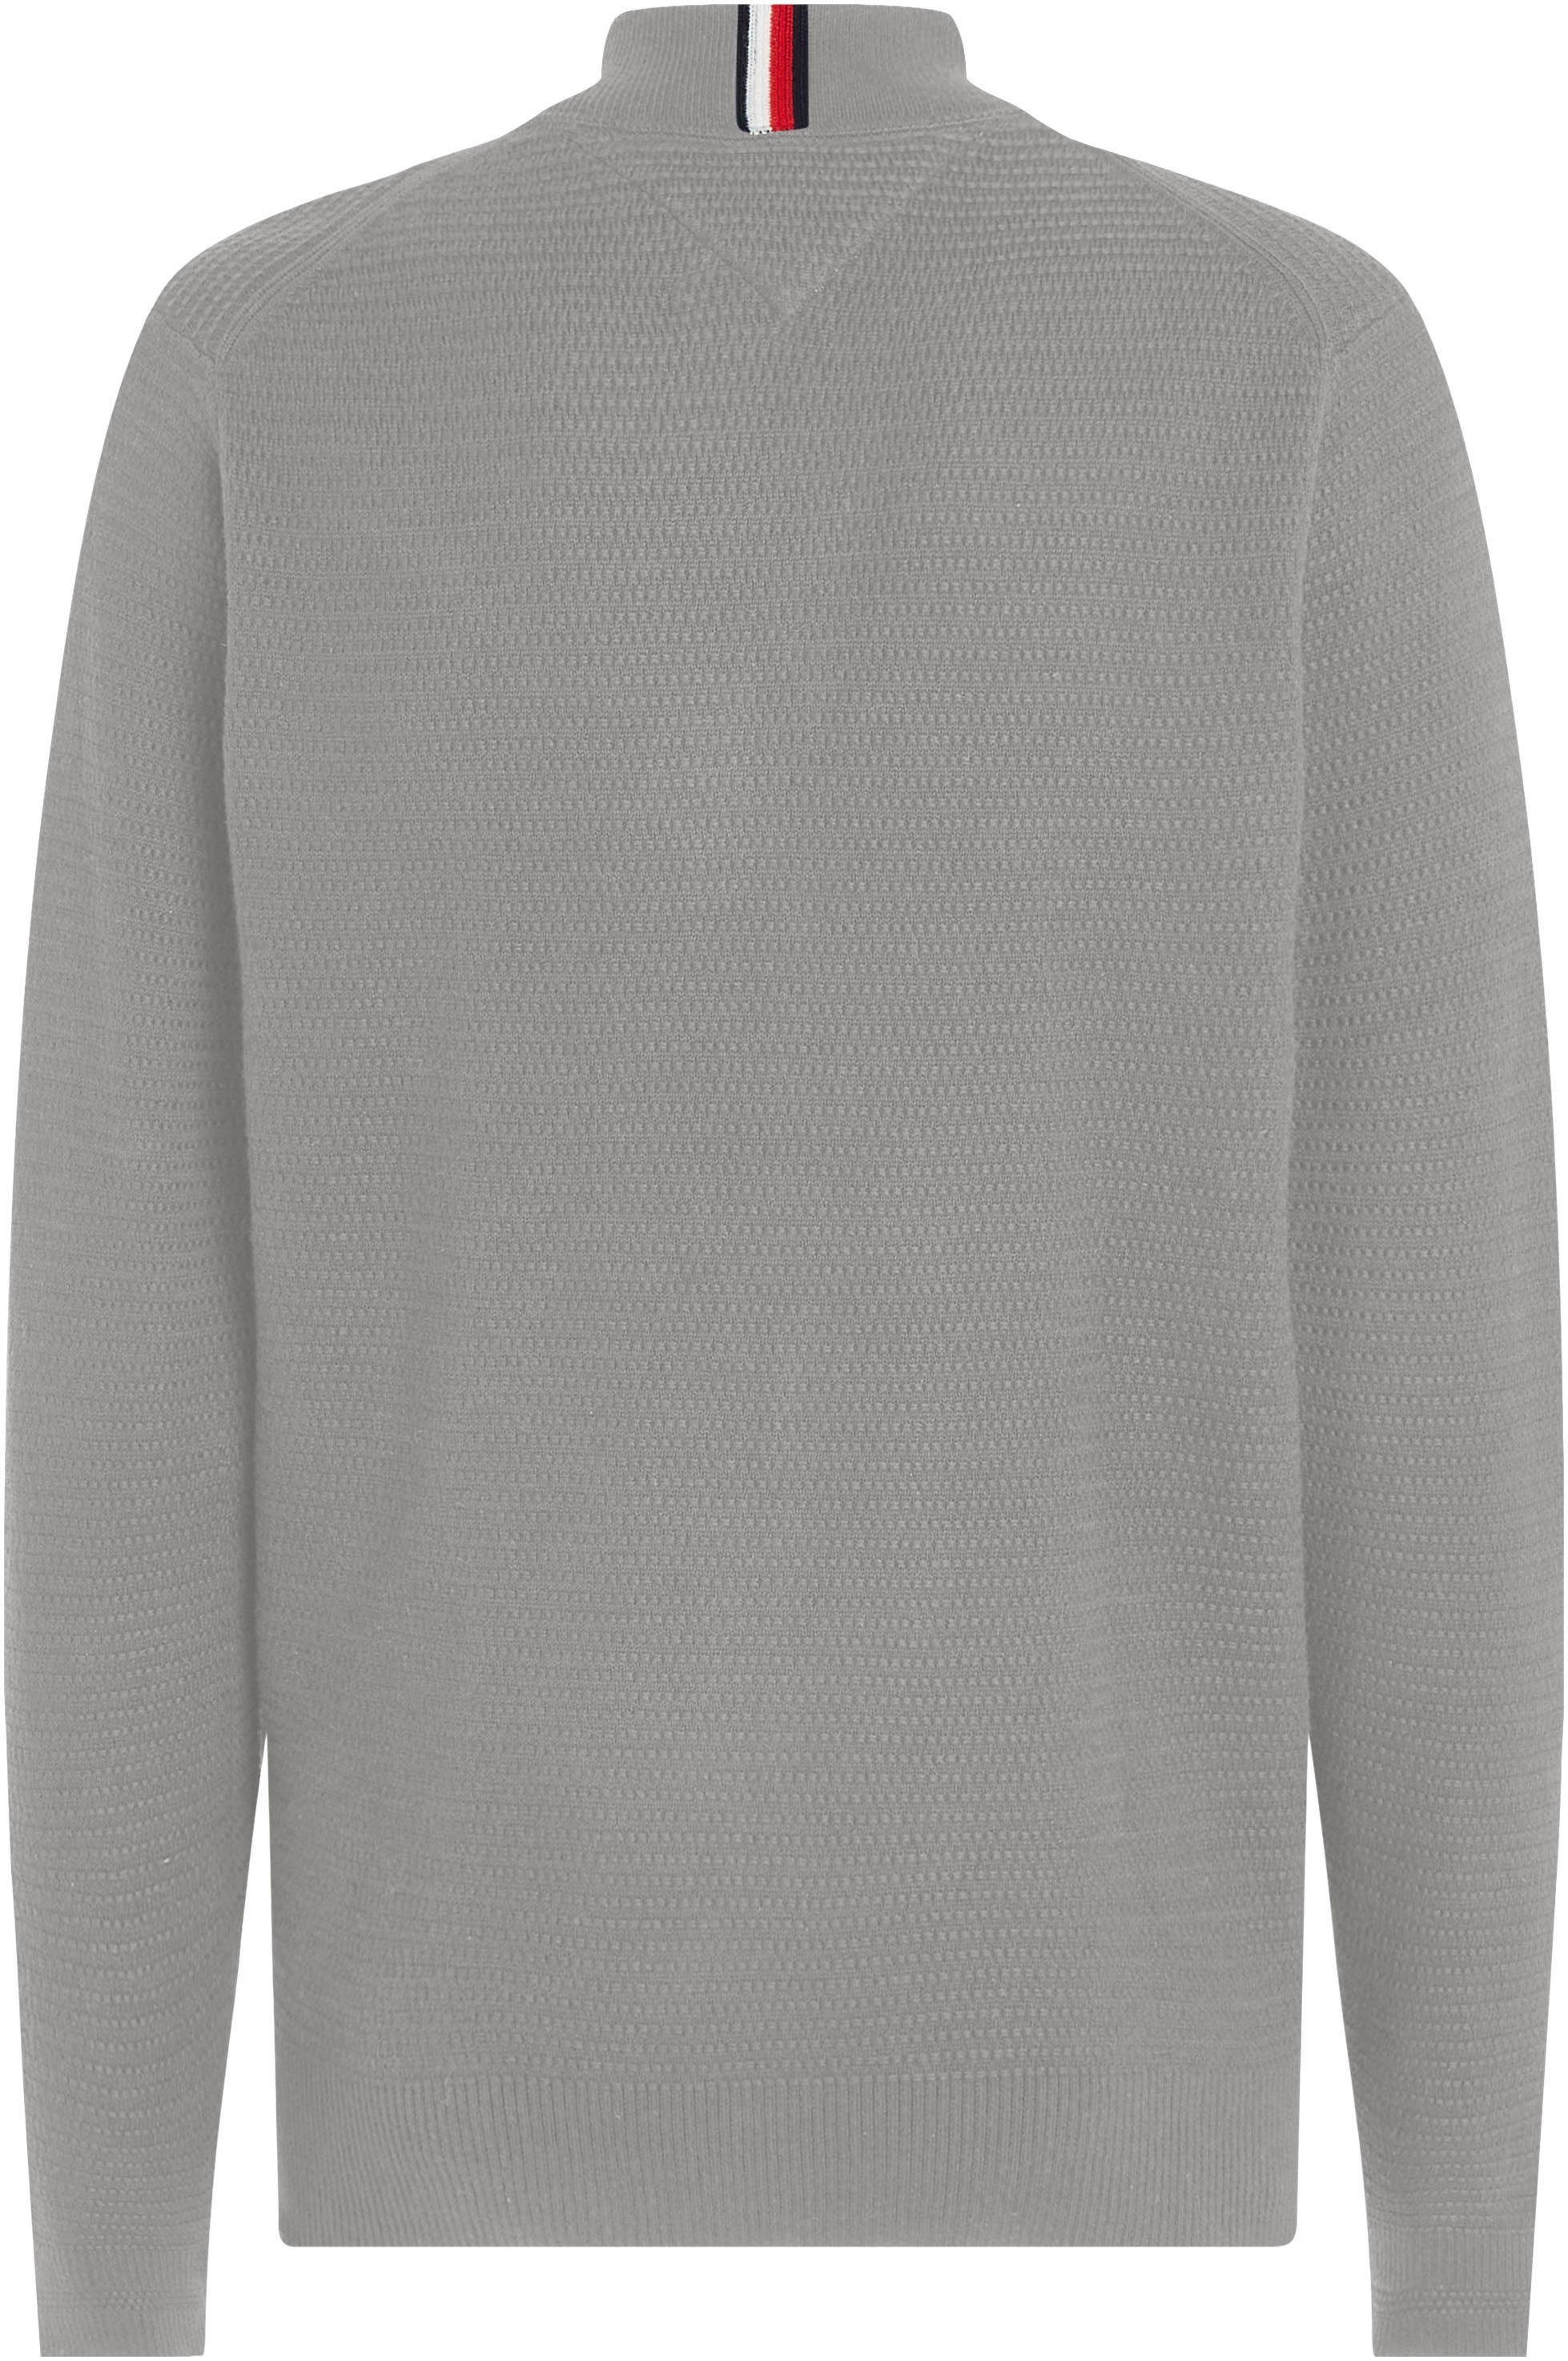 INTERLACED strukturierter ZIP Medium Hilfiger BASEBALL Sweatshirt in THROUGH Optik Grey Heather Tommy